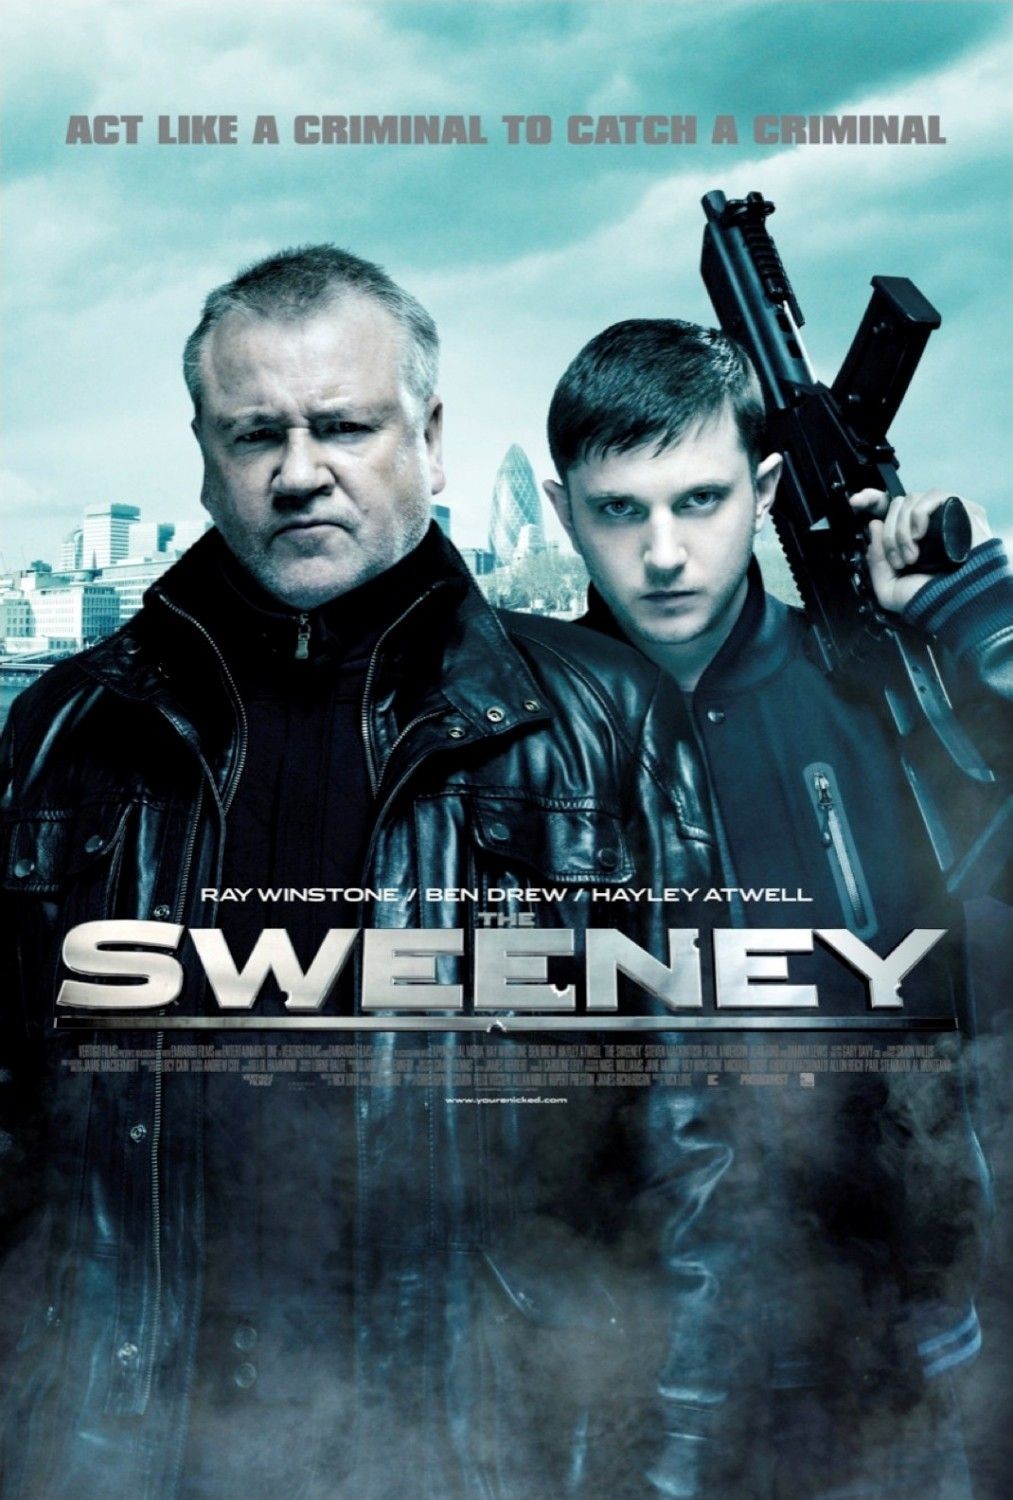 The Sweeney Movie 2013